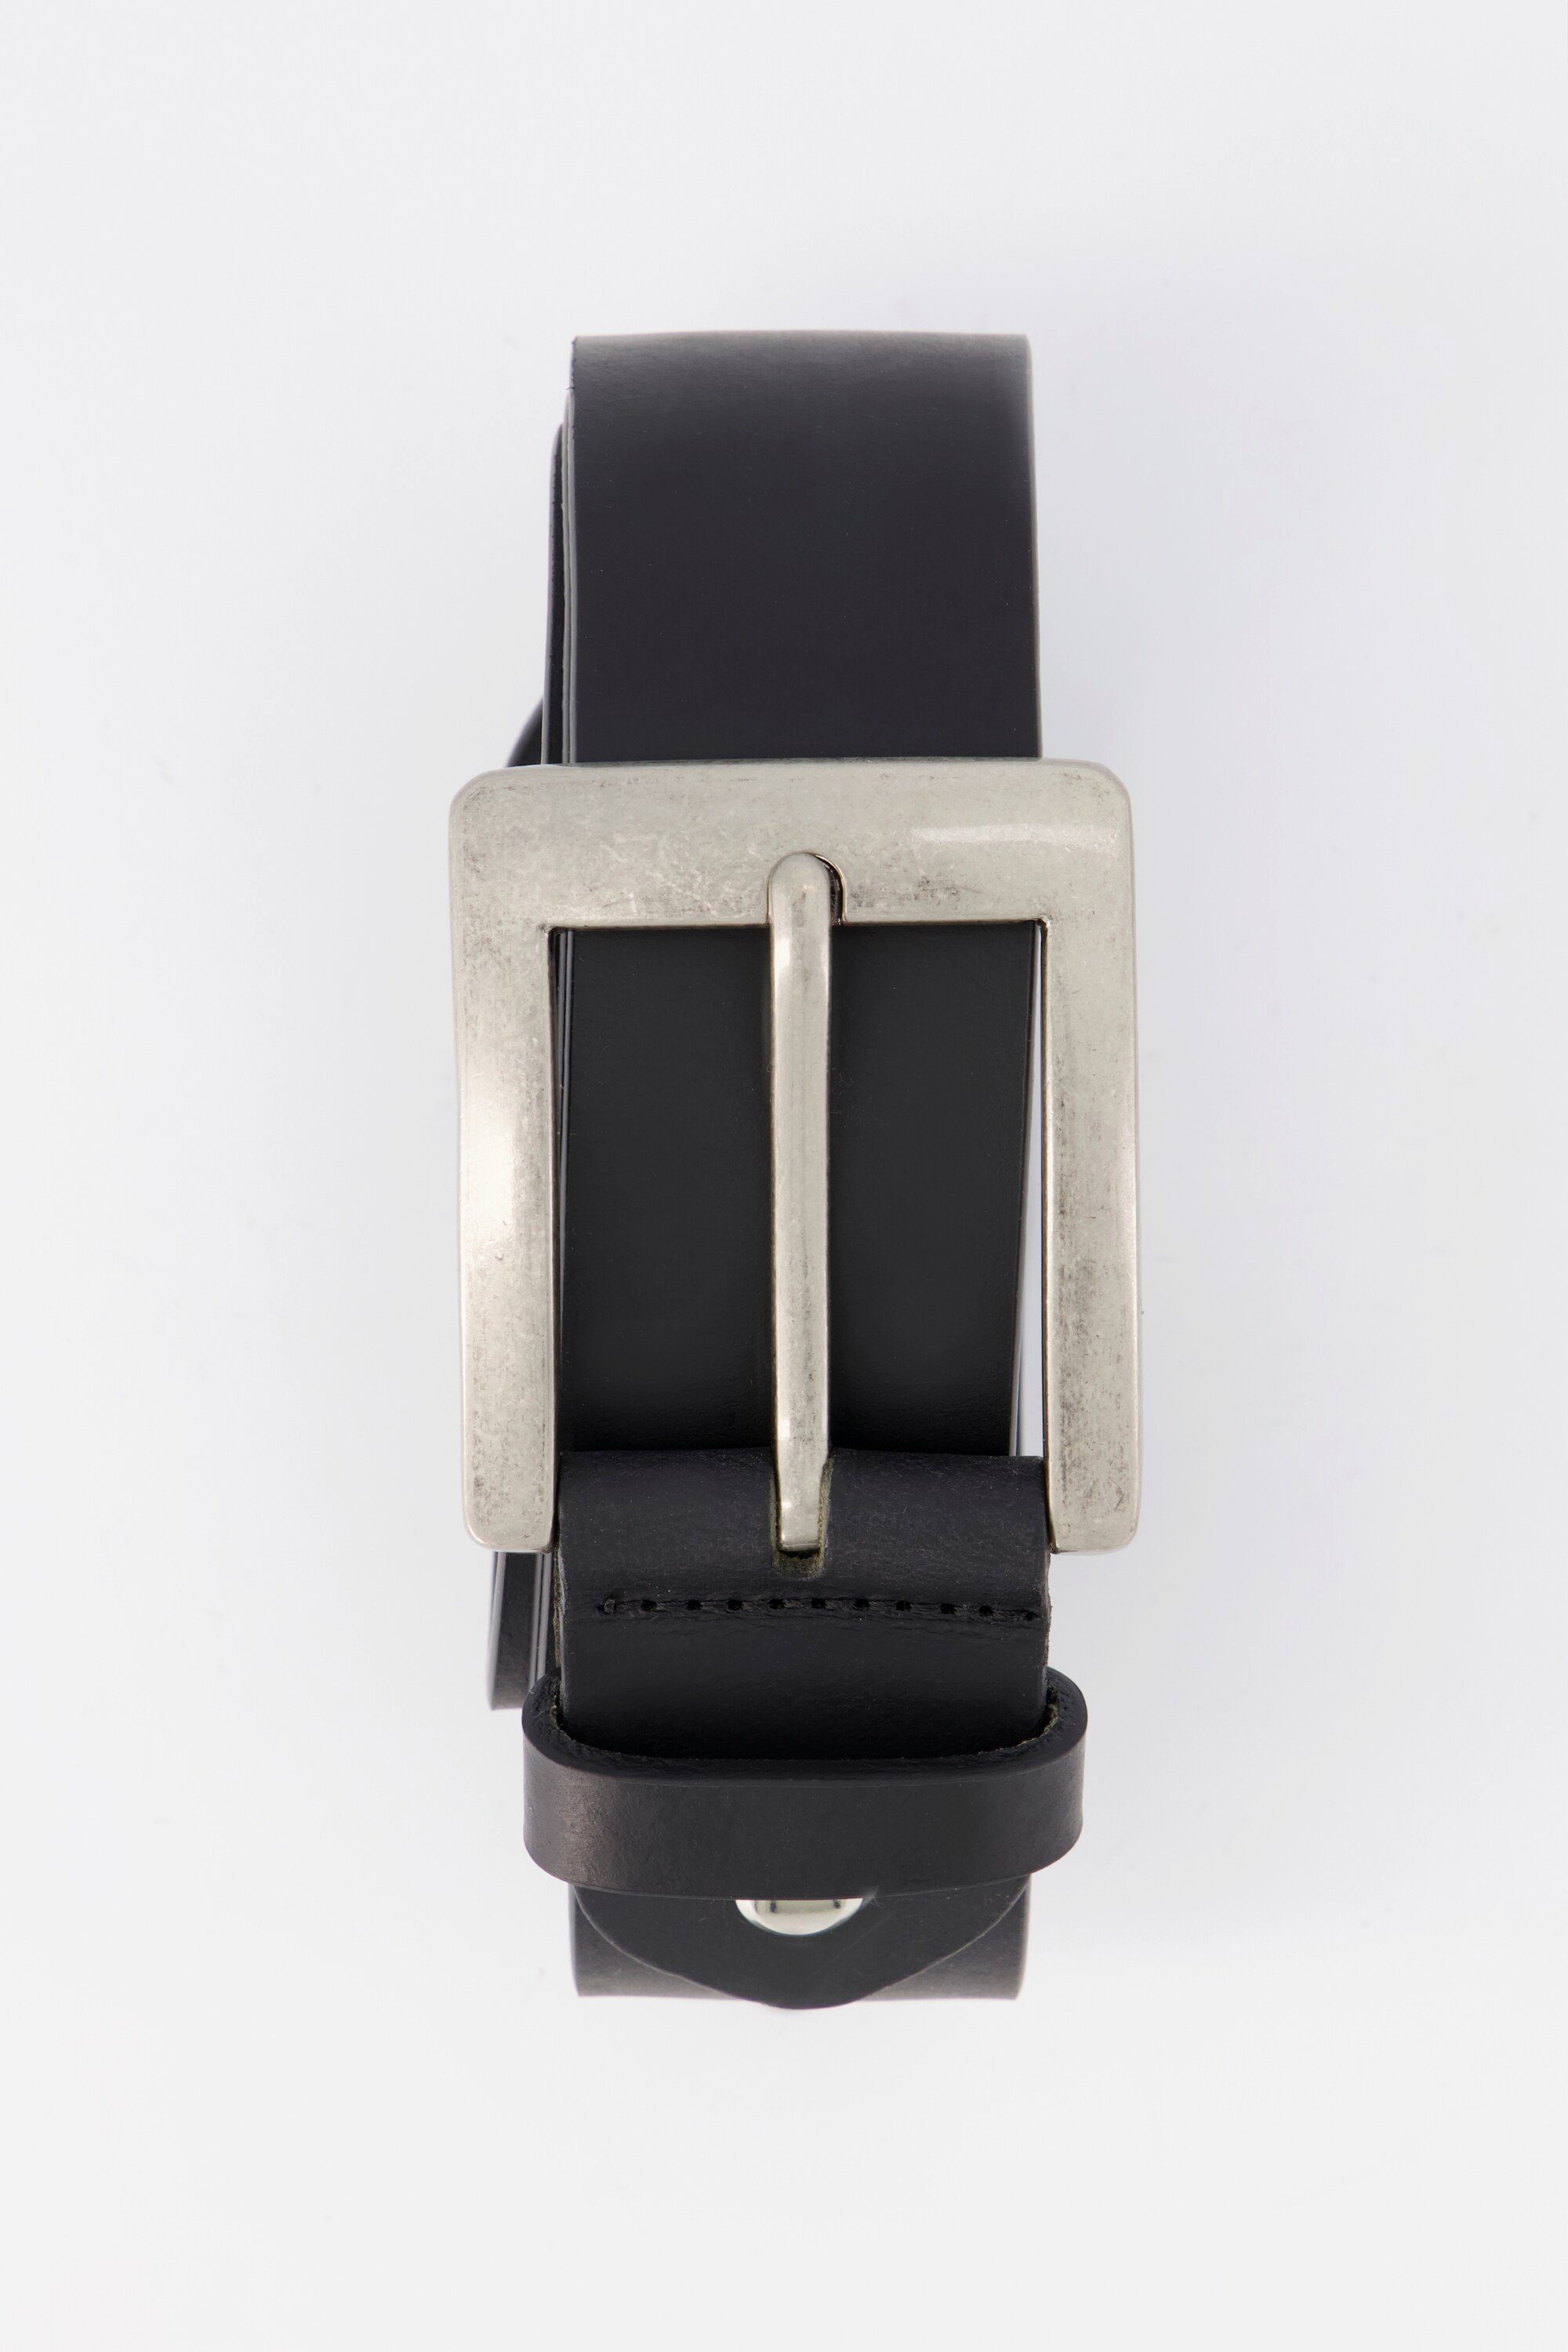 Hüftgürtel Ledergürtel JP1880 schwarz 170cm bis Vollrind-Leder